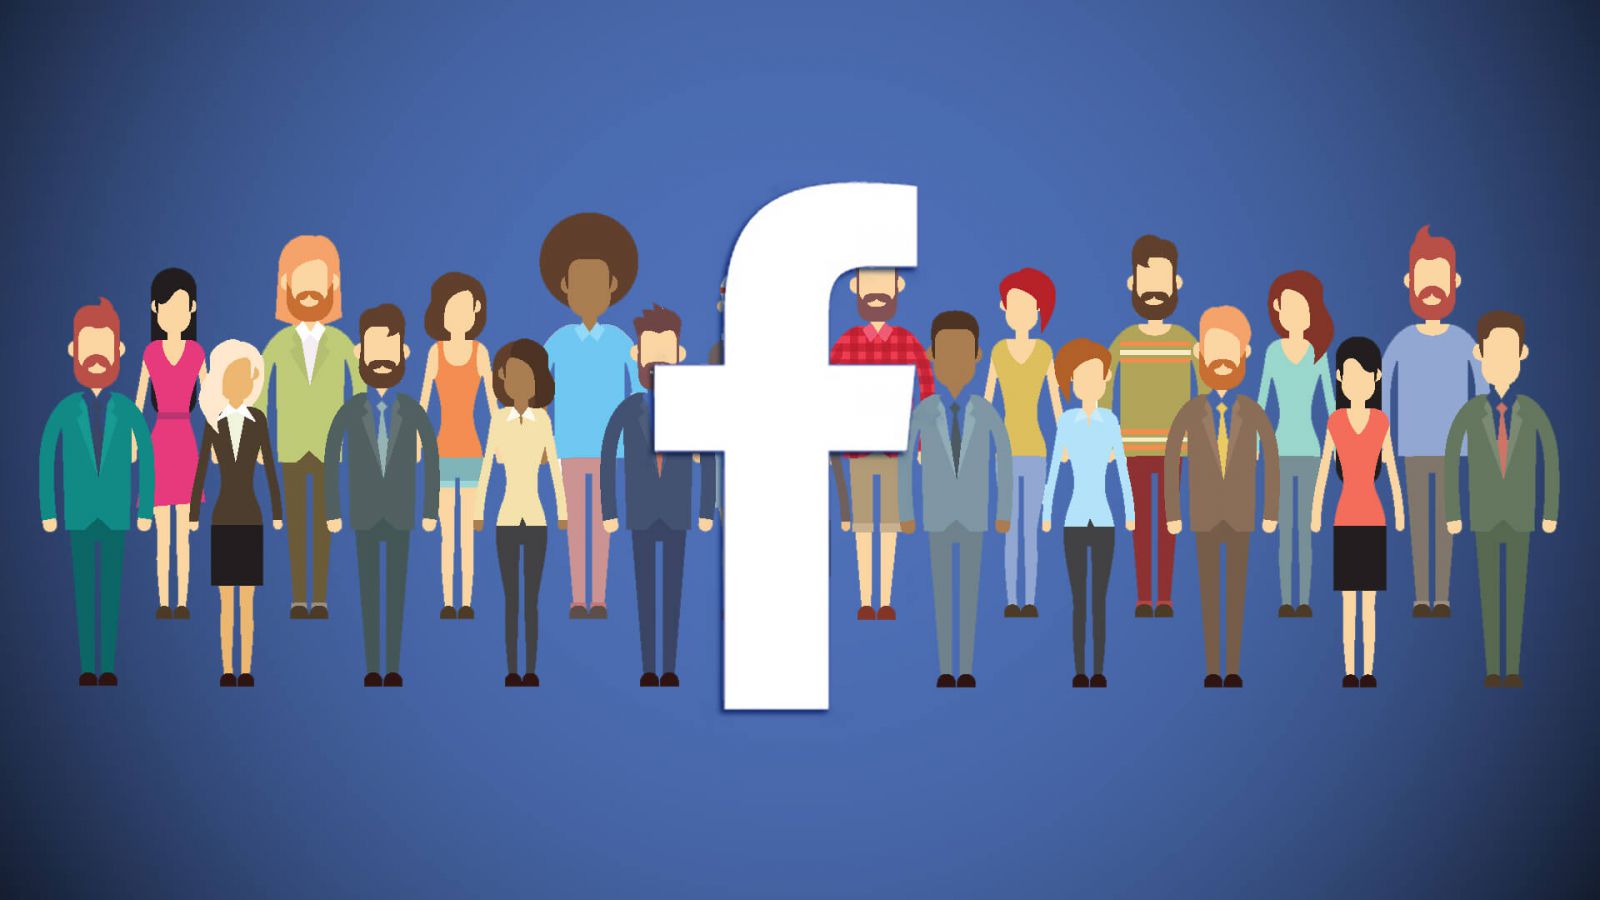 Quảng cáo bất động sản trên mạng xã hội facebook nhanh chóng tiếp cận khách hàng tiềm năng